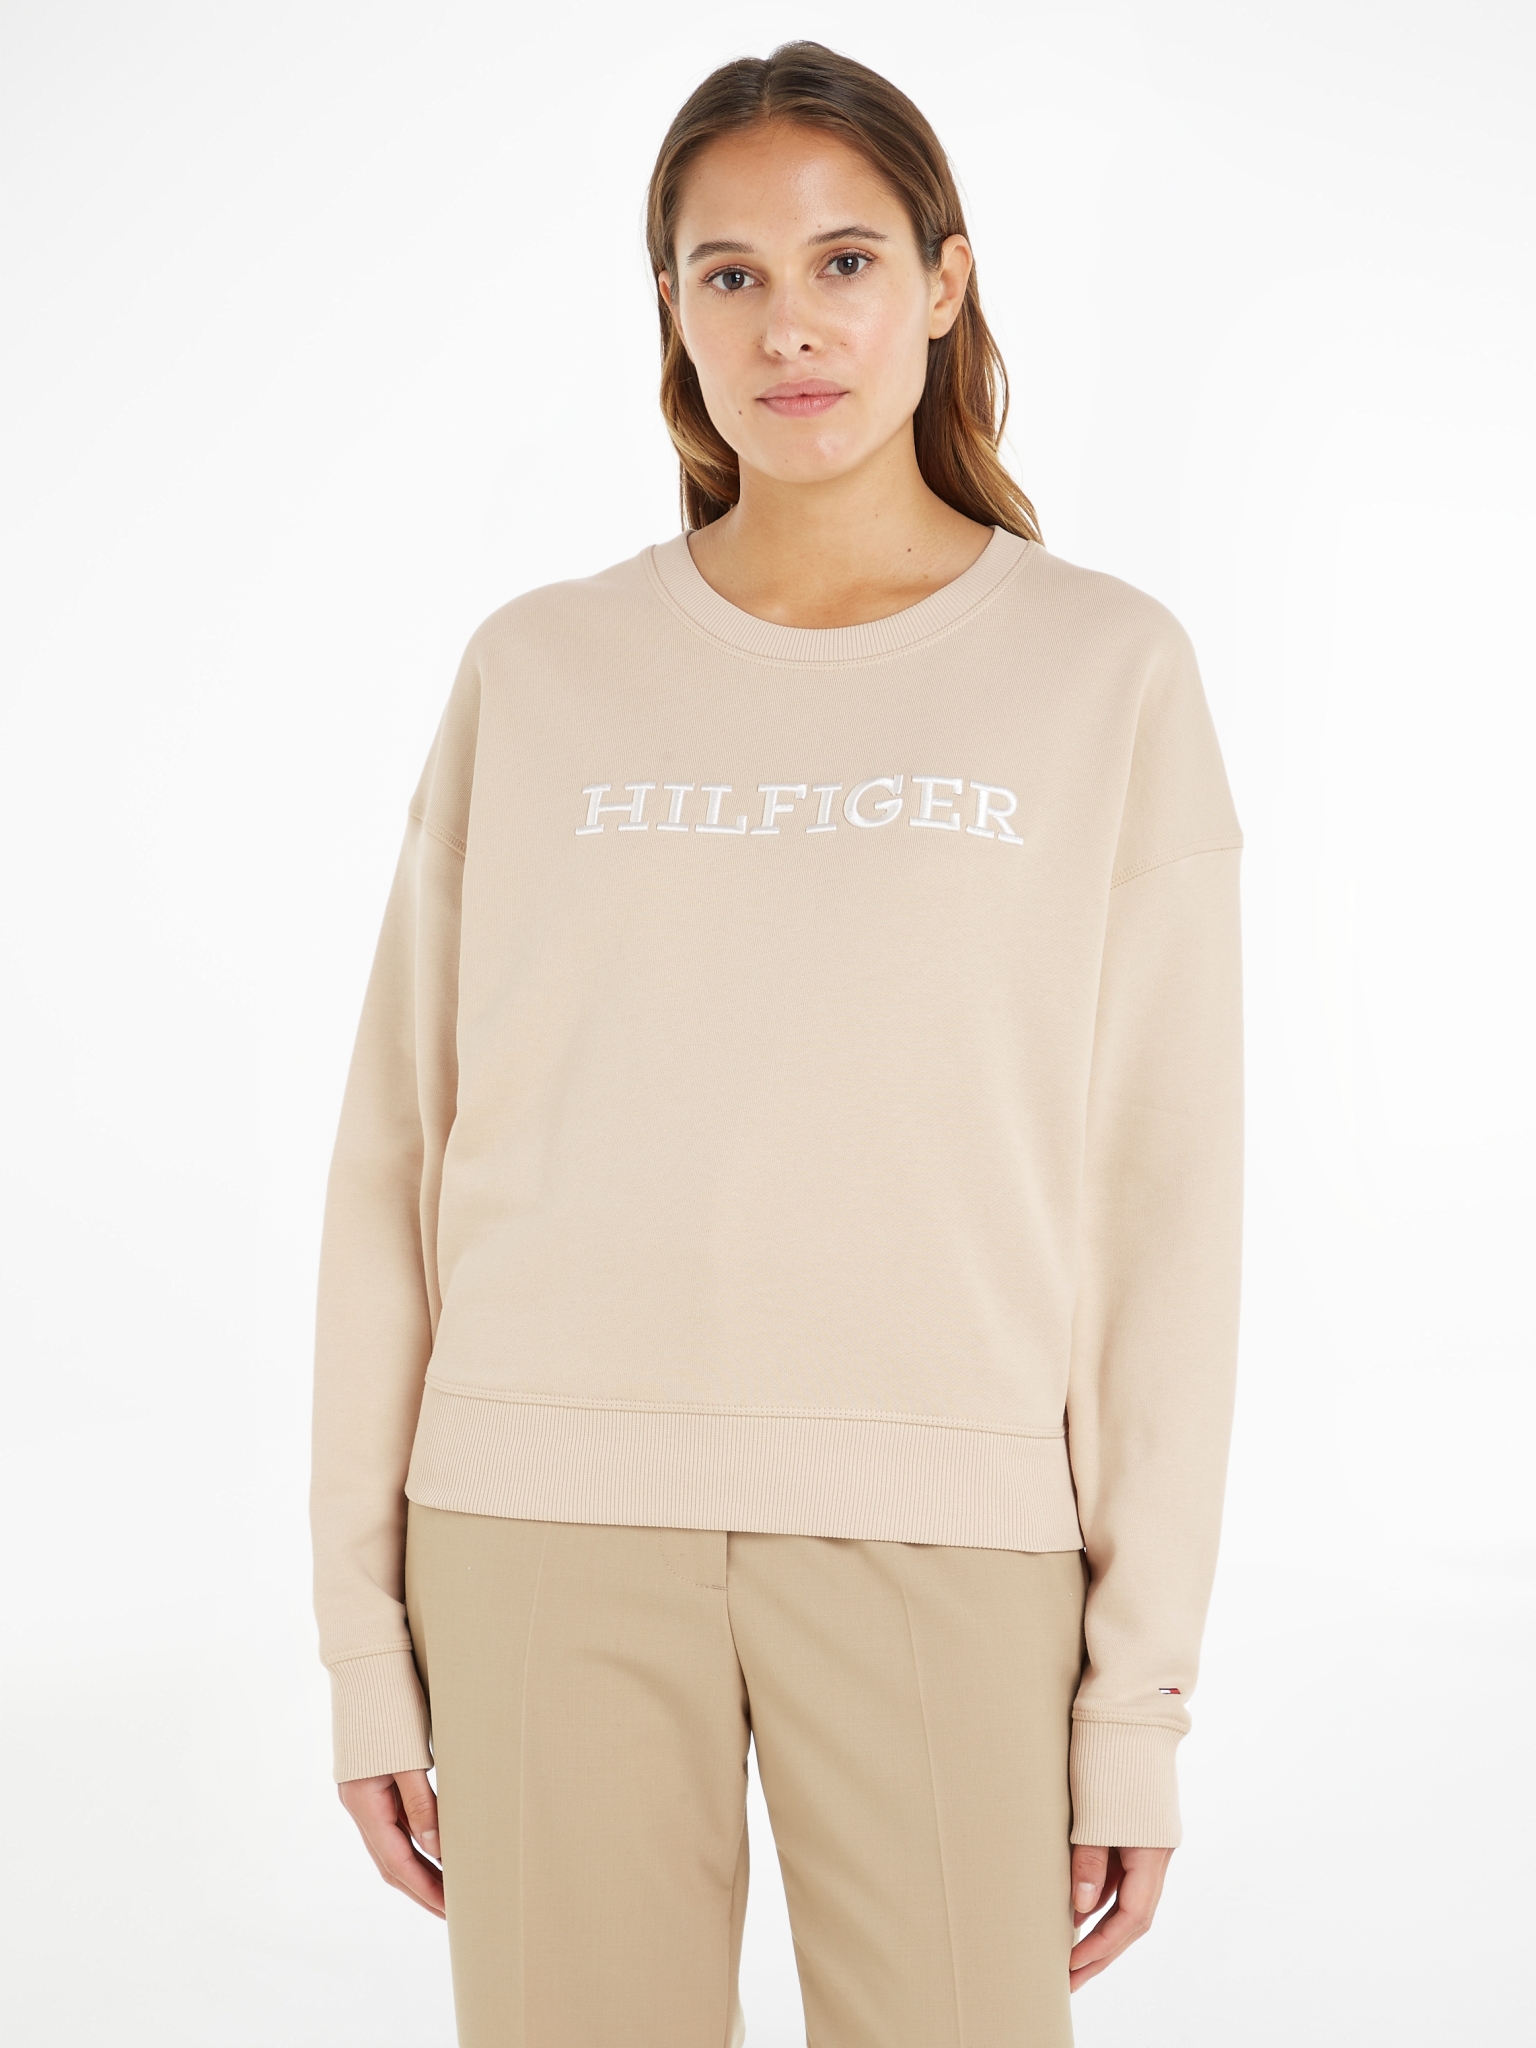 TOMMY HILFIGER Sweatshirt mit Hilfiger-Monotype-Stickerei 10704308